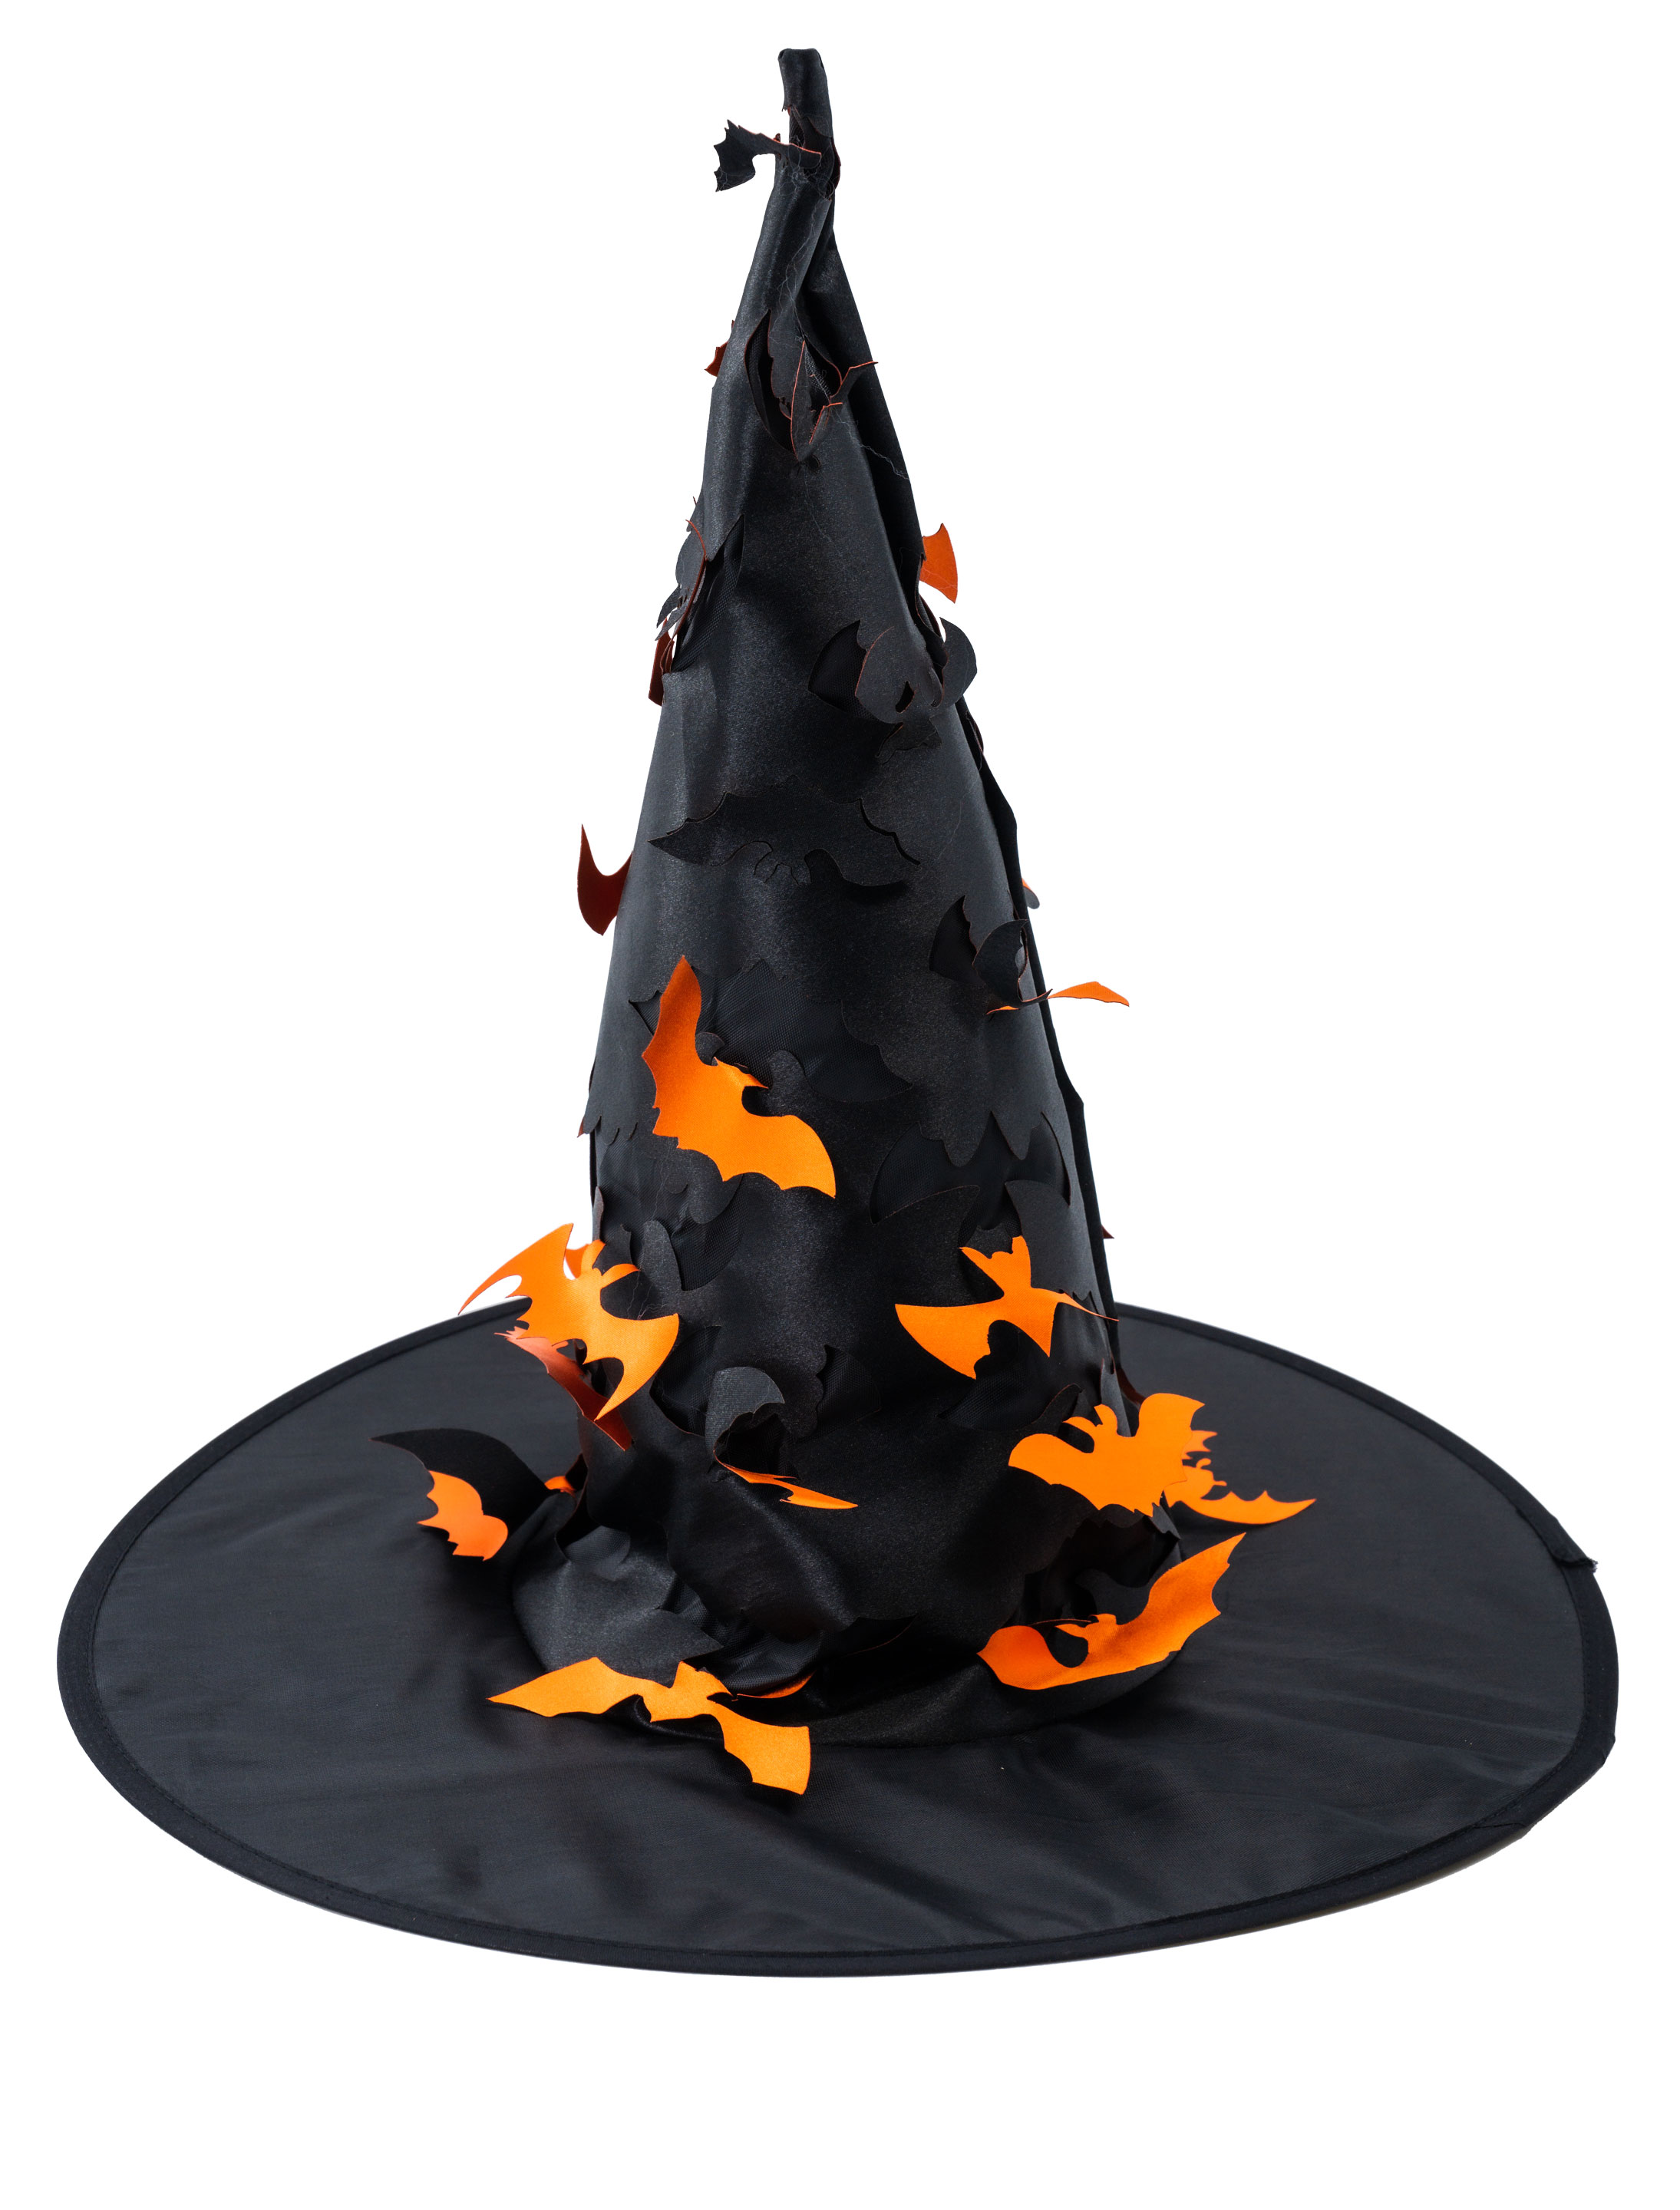 Hexenhut schwarz mit Geistern orange